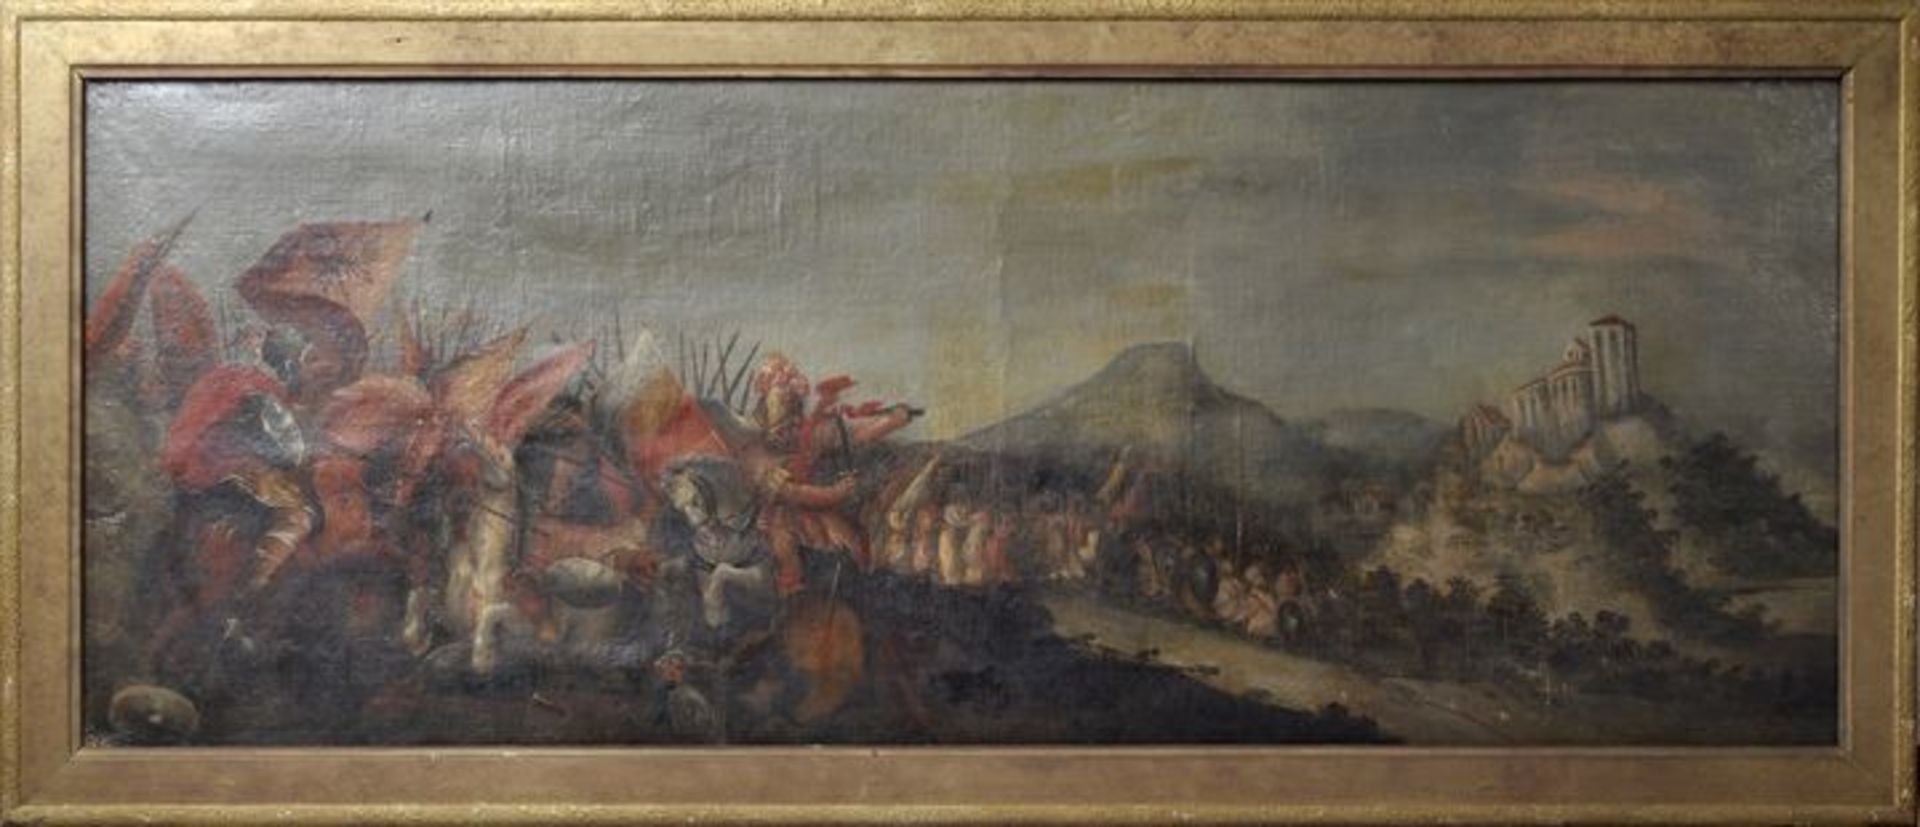 Schlachtenmaler, 2. H. 17. Jh.Schlachtpanorama Schlacht der Türkenkriege. Öl auf Leinwand, doubl., - Bild 2 aus 4